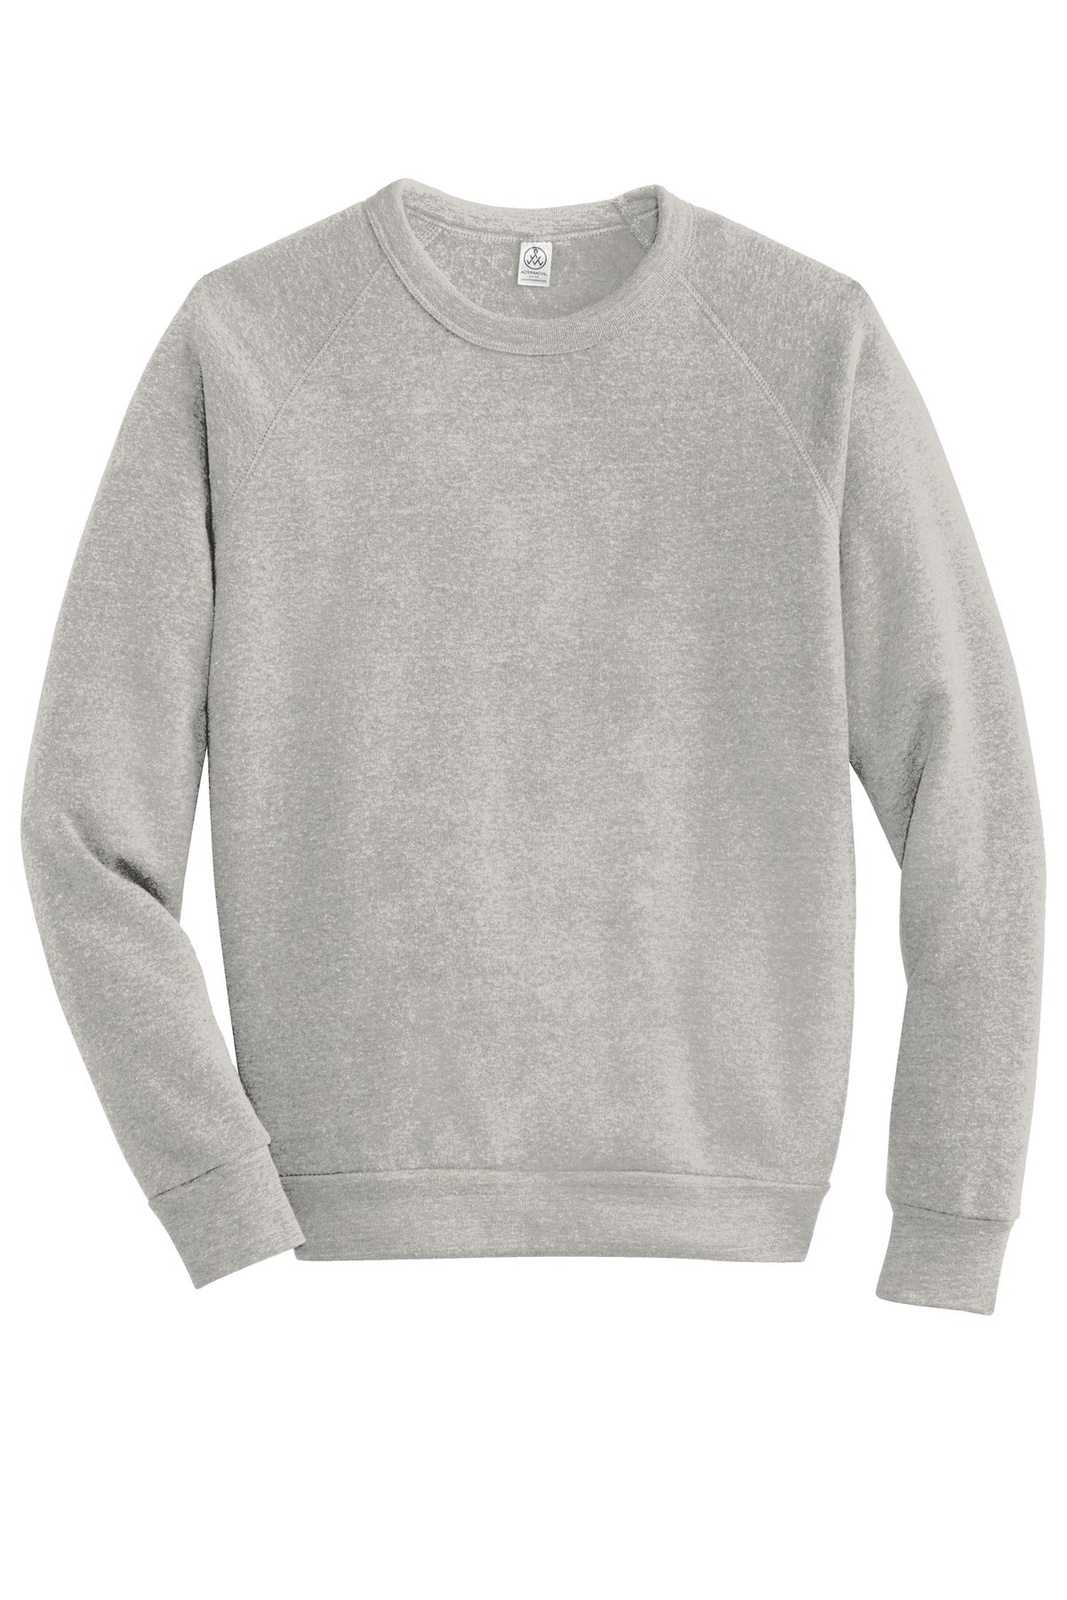 Alternative AA9575 Champ Eco-Fleece Sweatshirt - Eco Oatmeal Gray - HIT a Double - 5